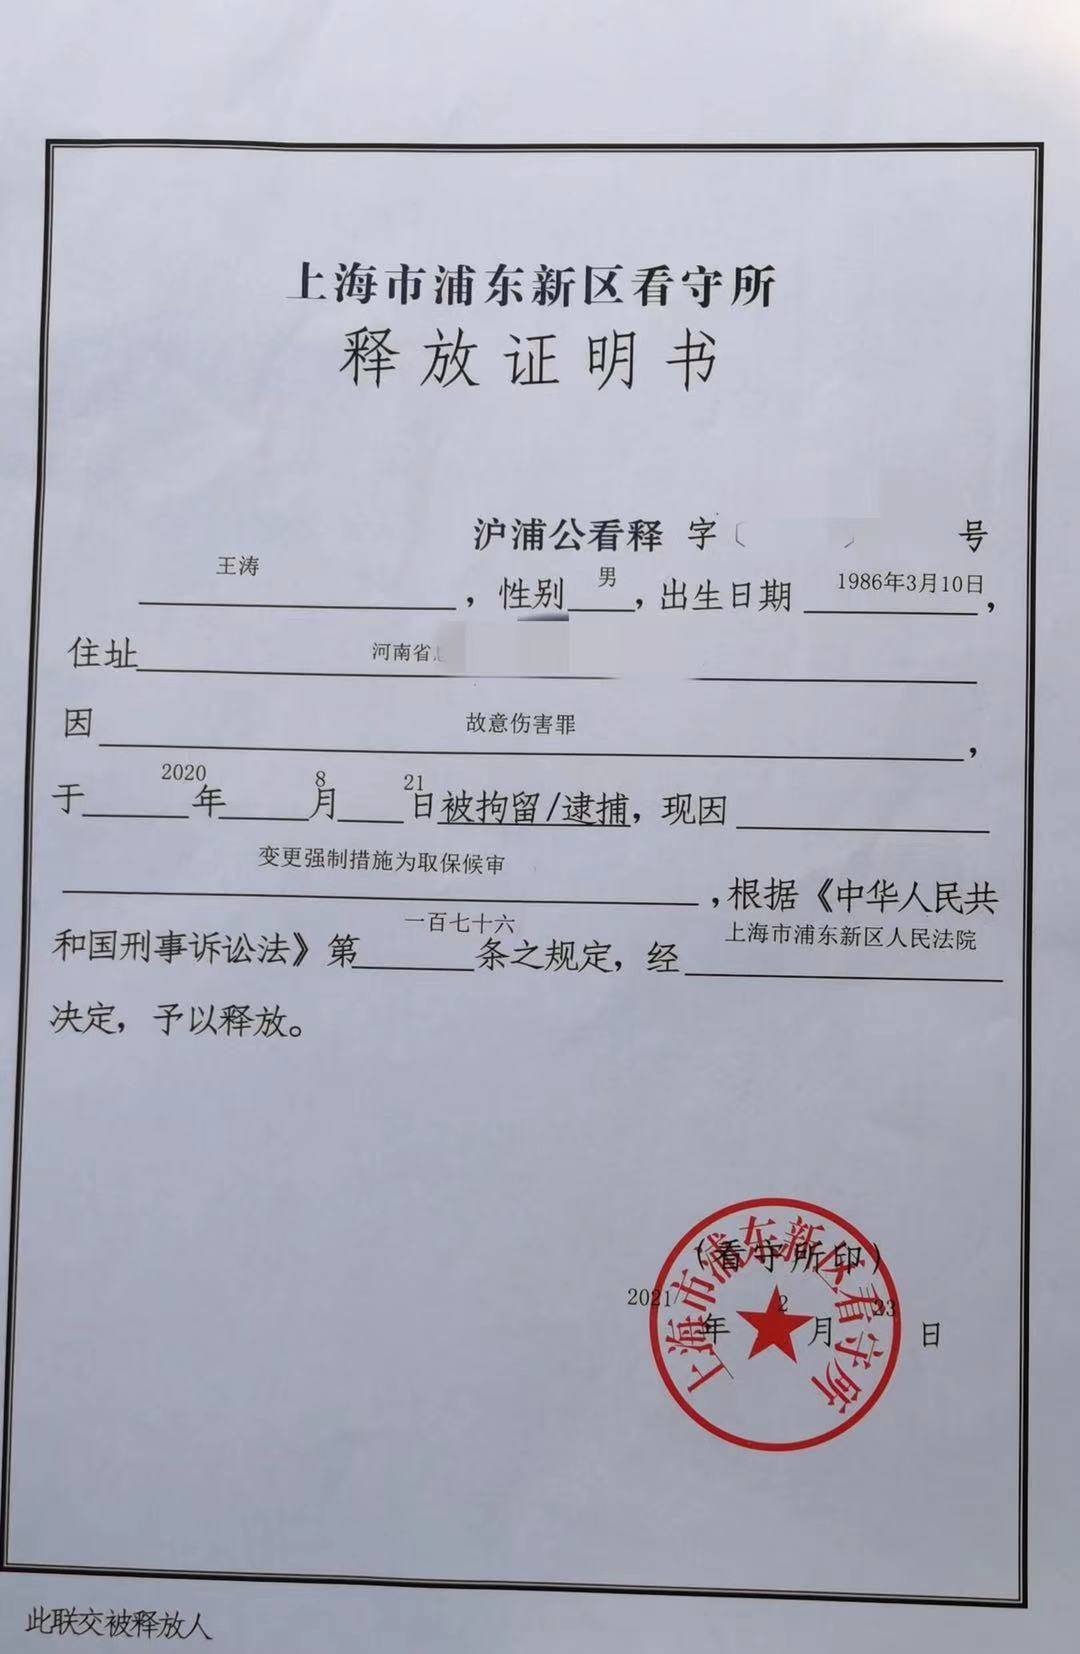 上海一男子 夺刀反伤 同事,执行逮捕半年后今日被取保候审